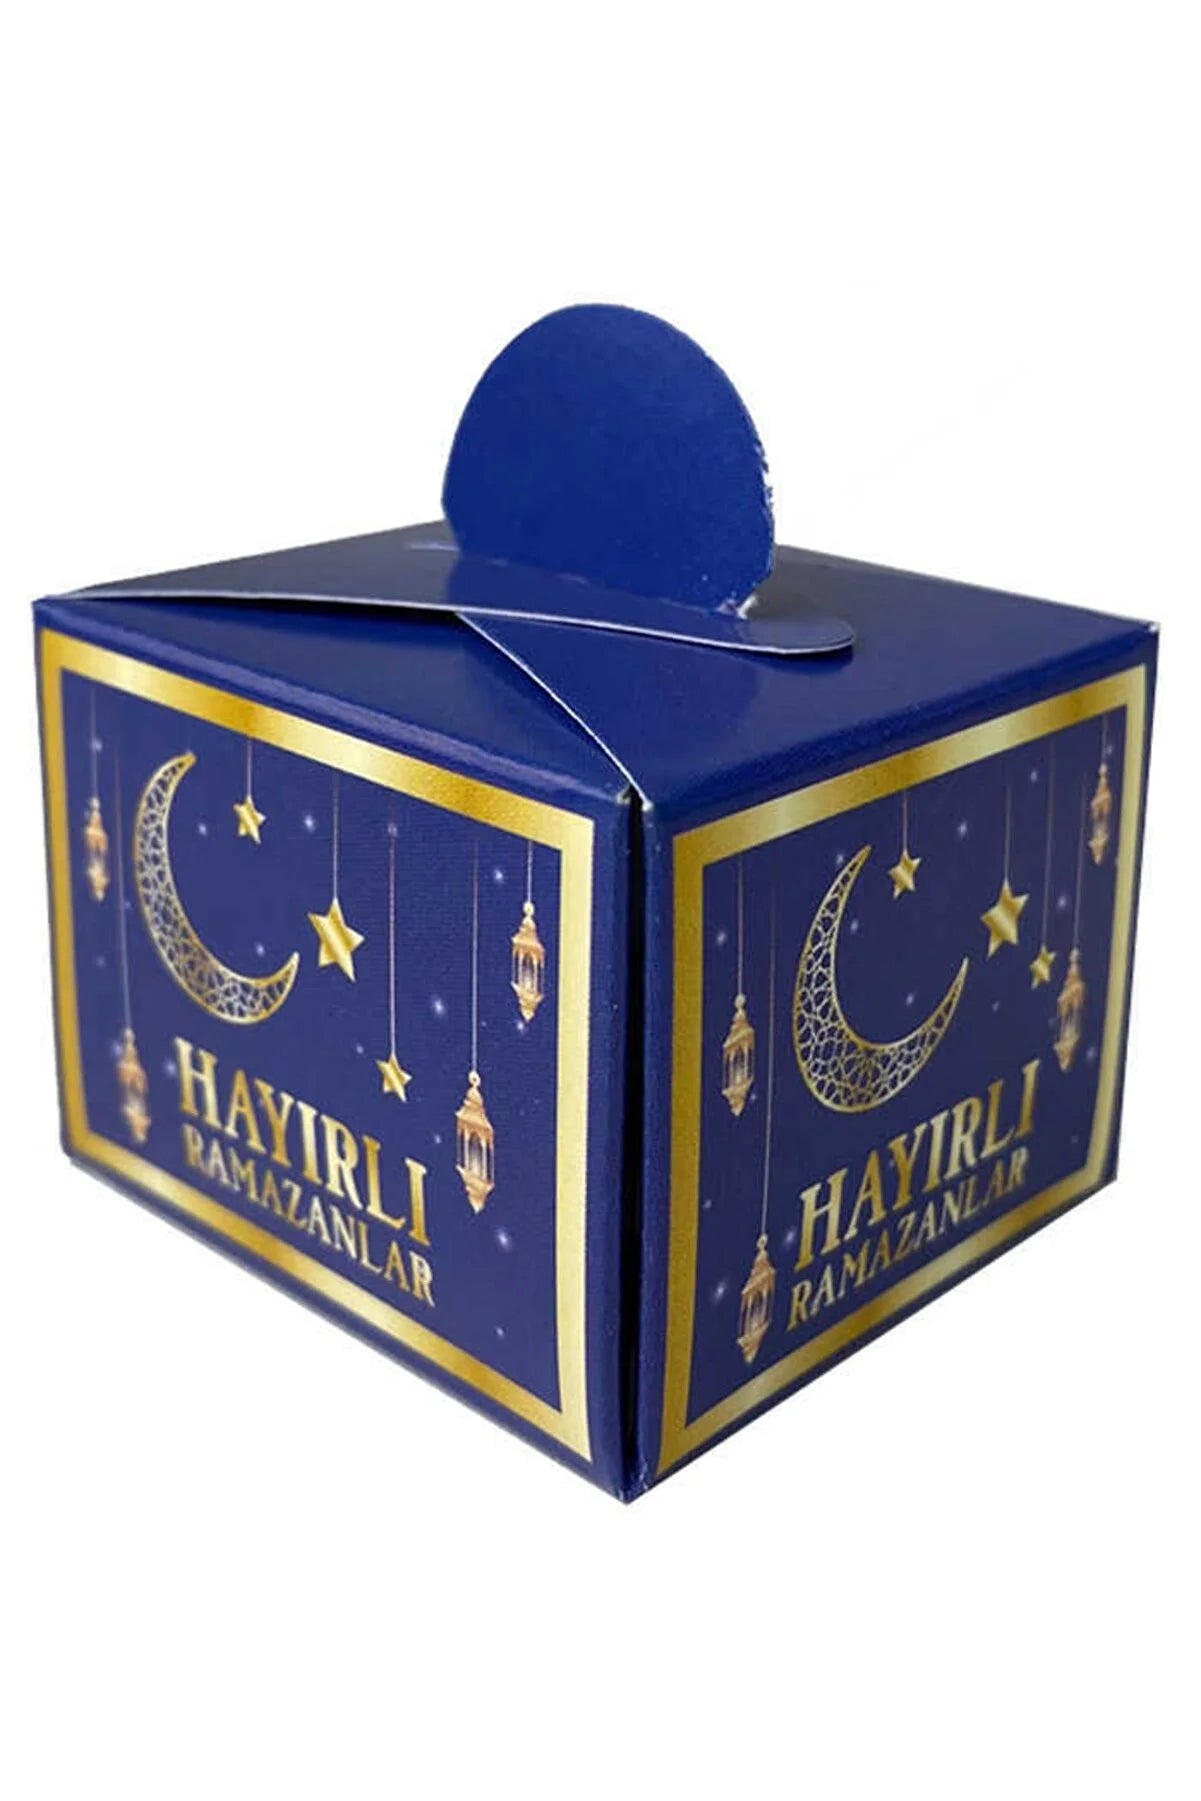 Lokum-Box 25 Stück "Hayirli Ramazanlar"